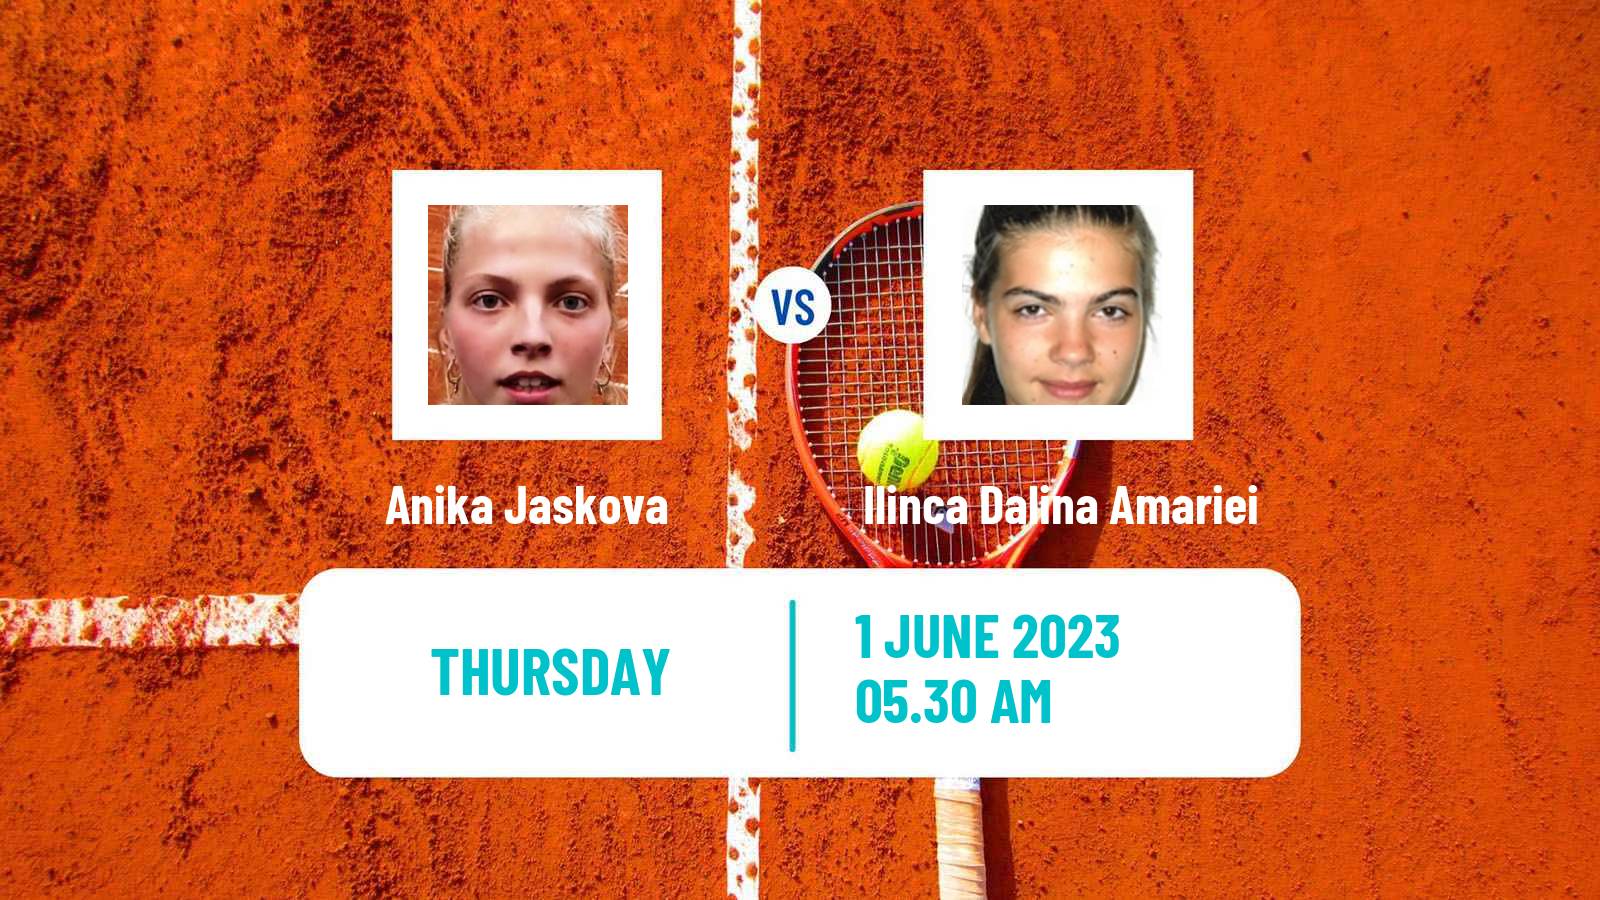 Tennis ITF W40 Otocec 2 Women Anika Jaskova - Ilinca Dalina Amariei